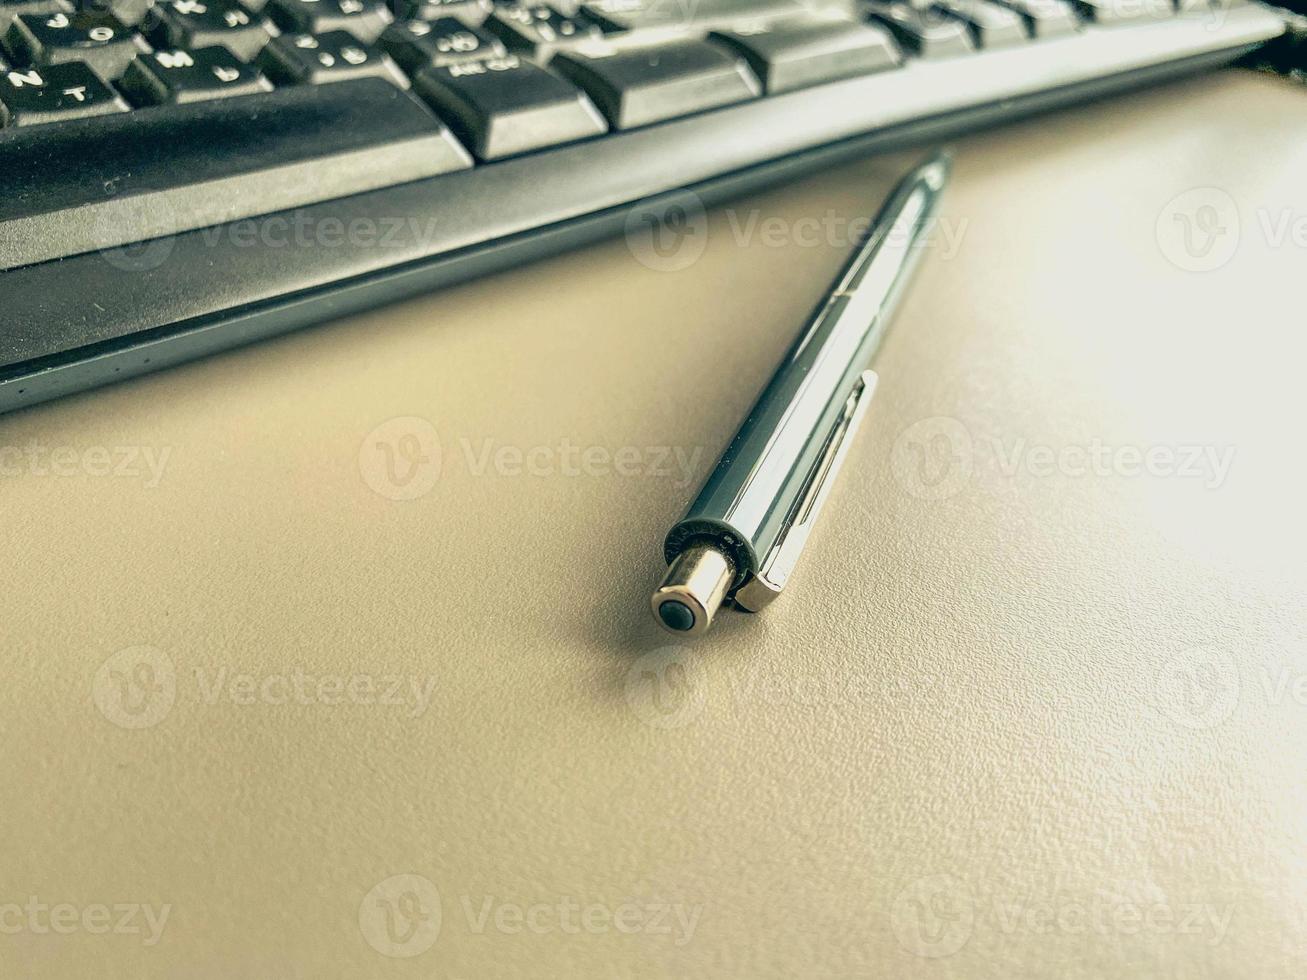 Stazionario su il tavolo nel il ufficio. blu, piccolo penna con un' asta per fabbricazione Appunti su carta. metallo penna per scrivere. Il prossimo per il tastiera per digitando foto